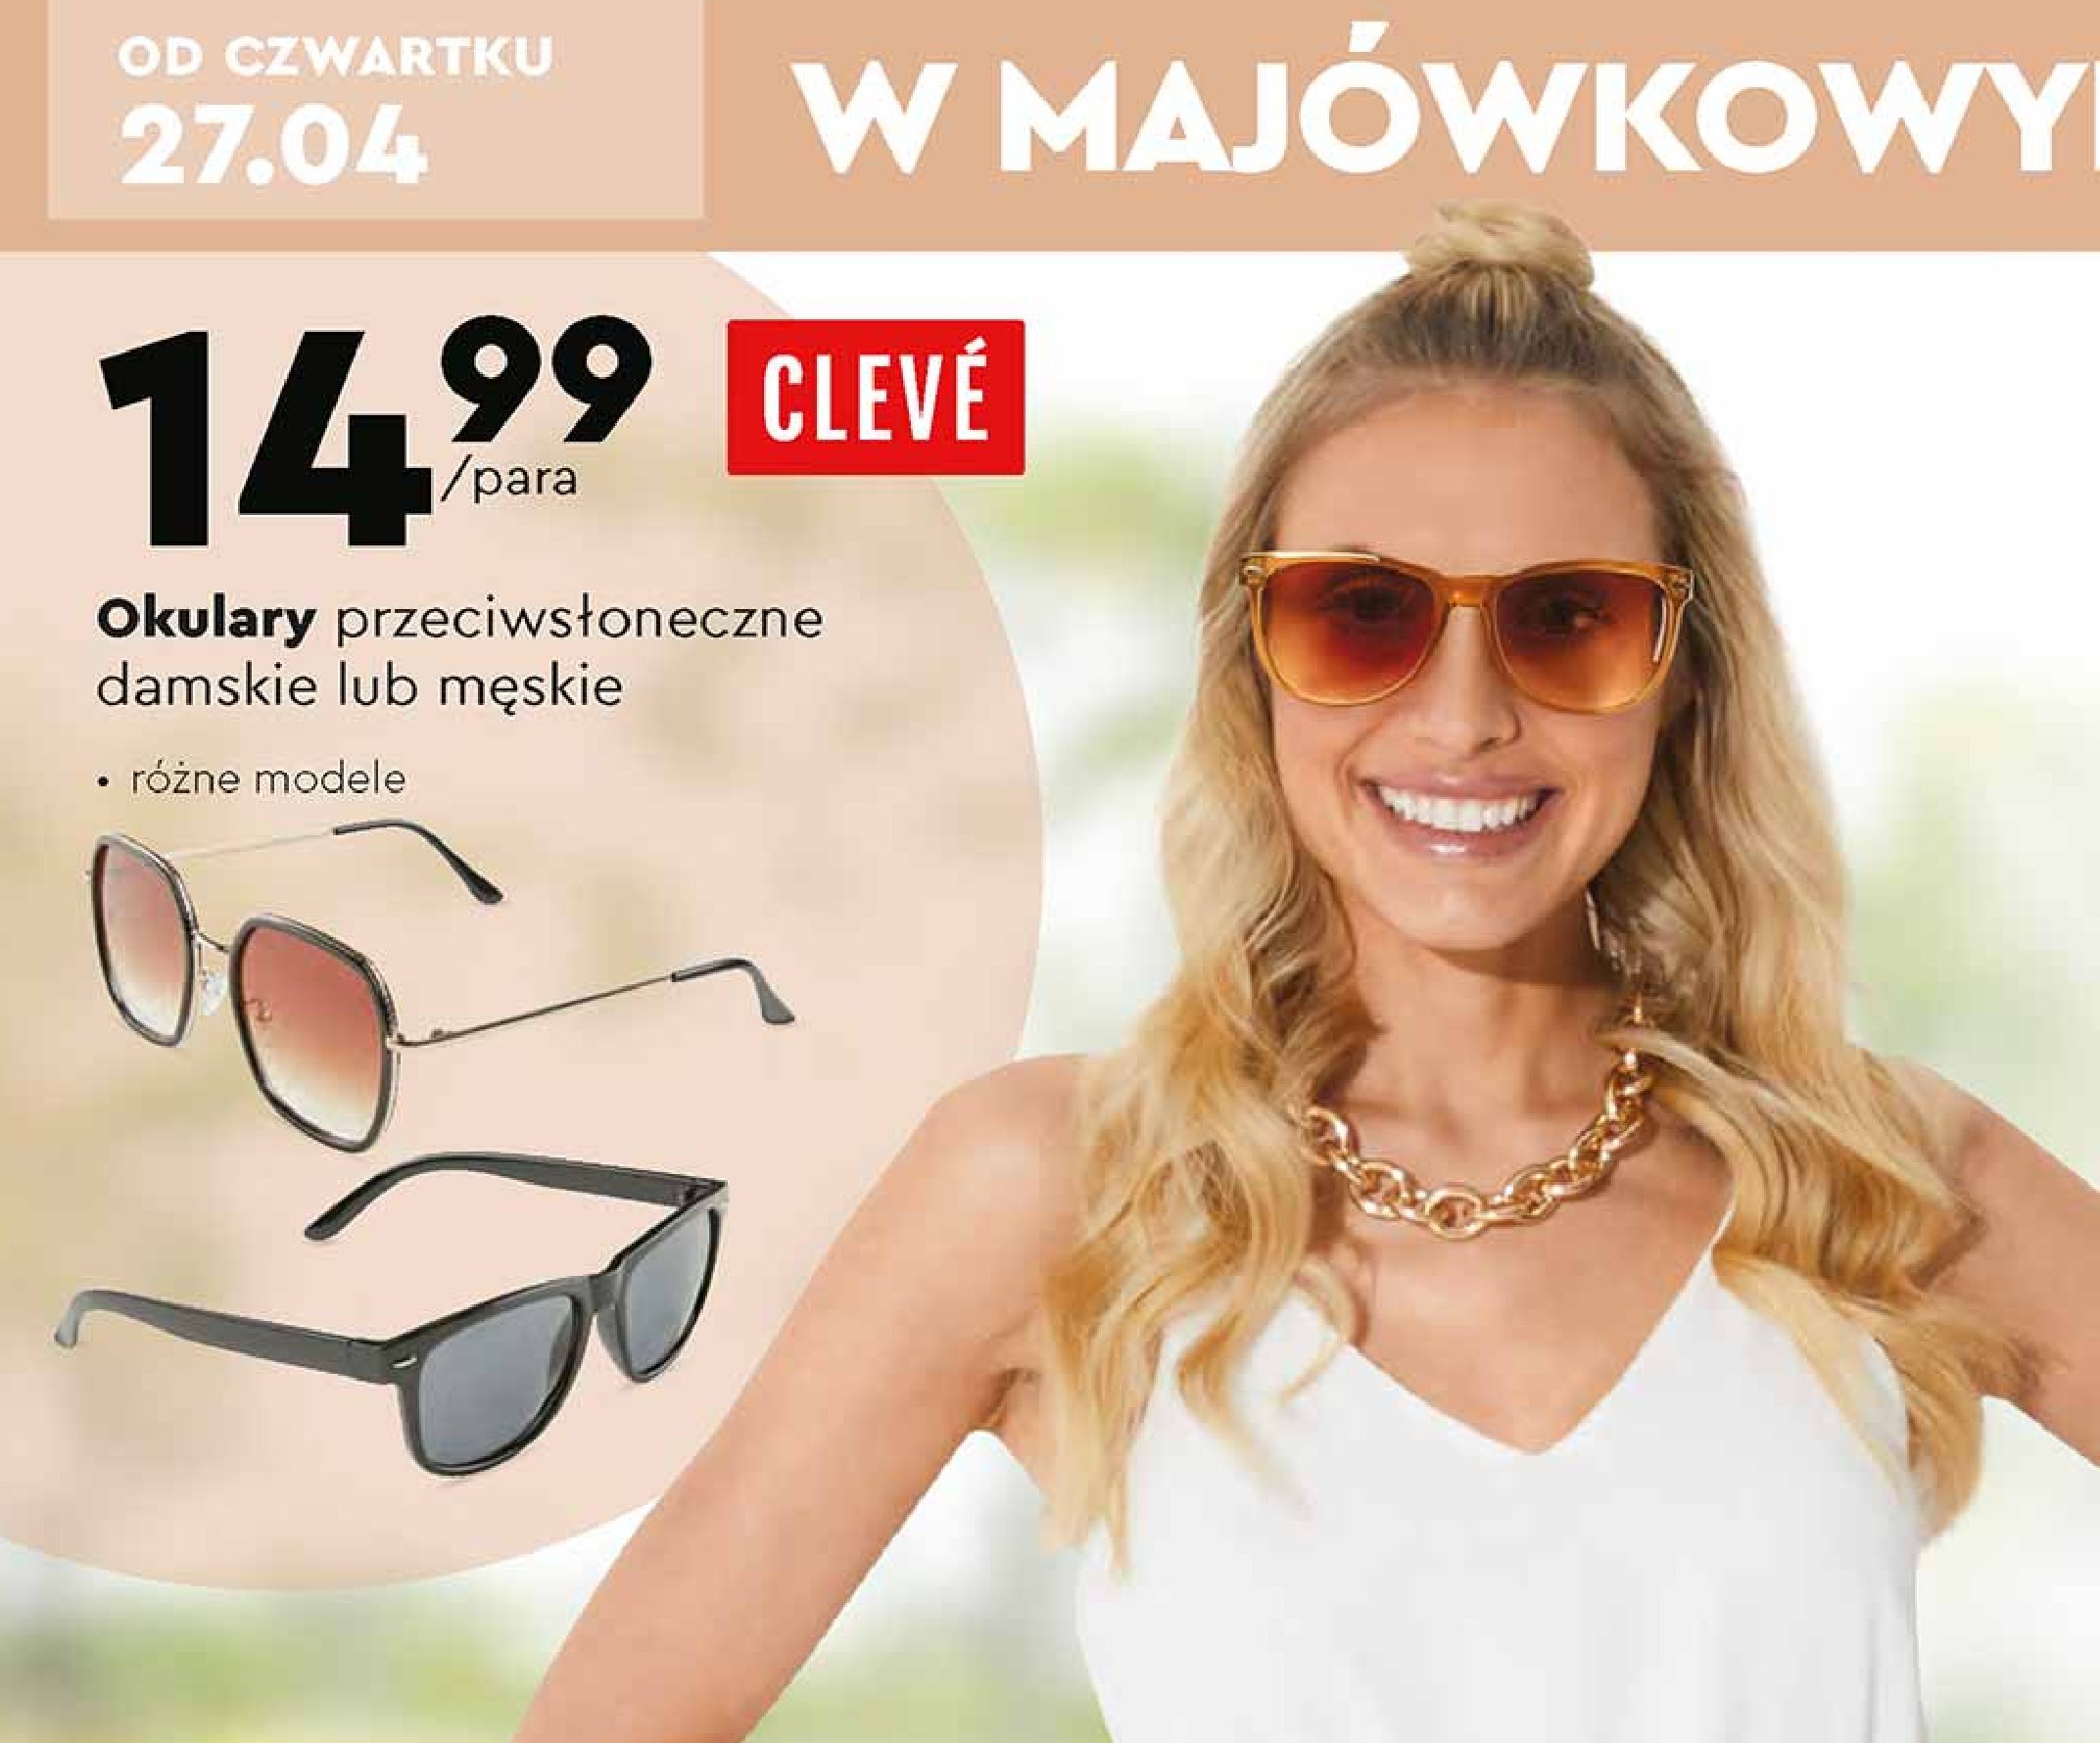 Okulary przeciwsłoneczne damskie Cleve promocja